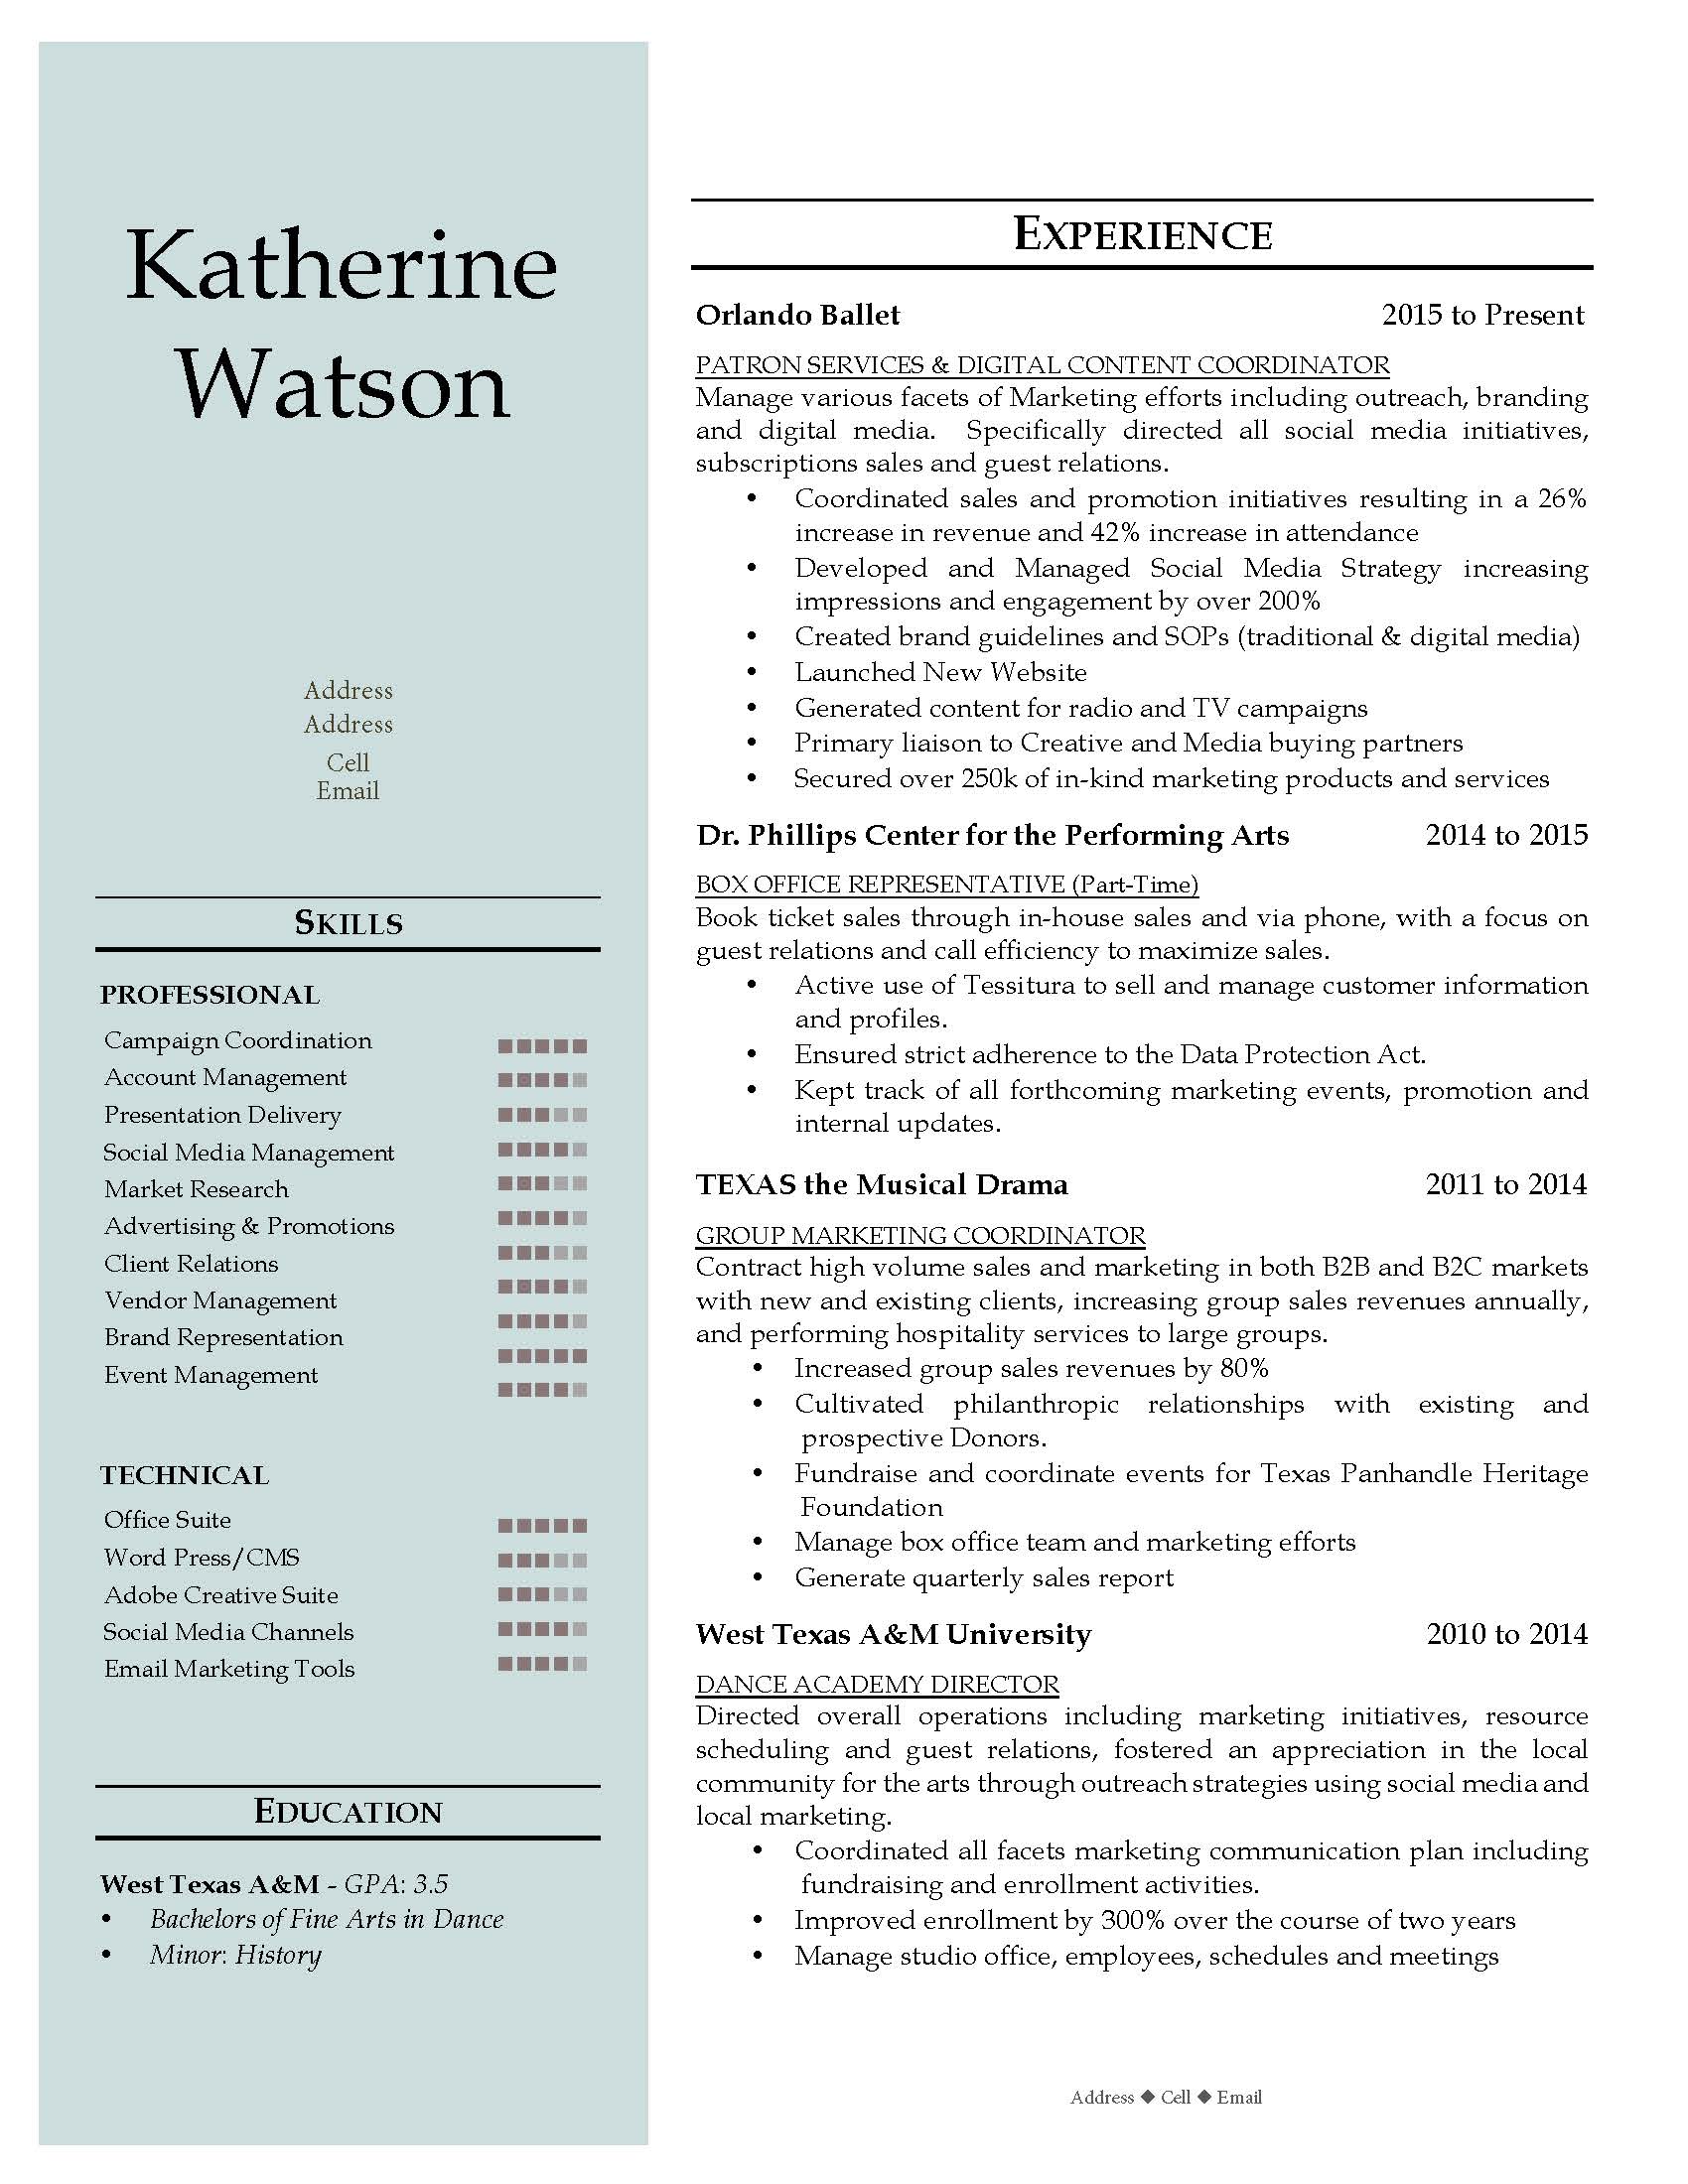 K Watson - v.2 6-4-2016